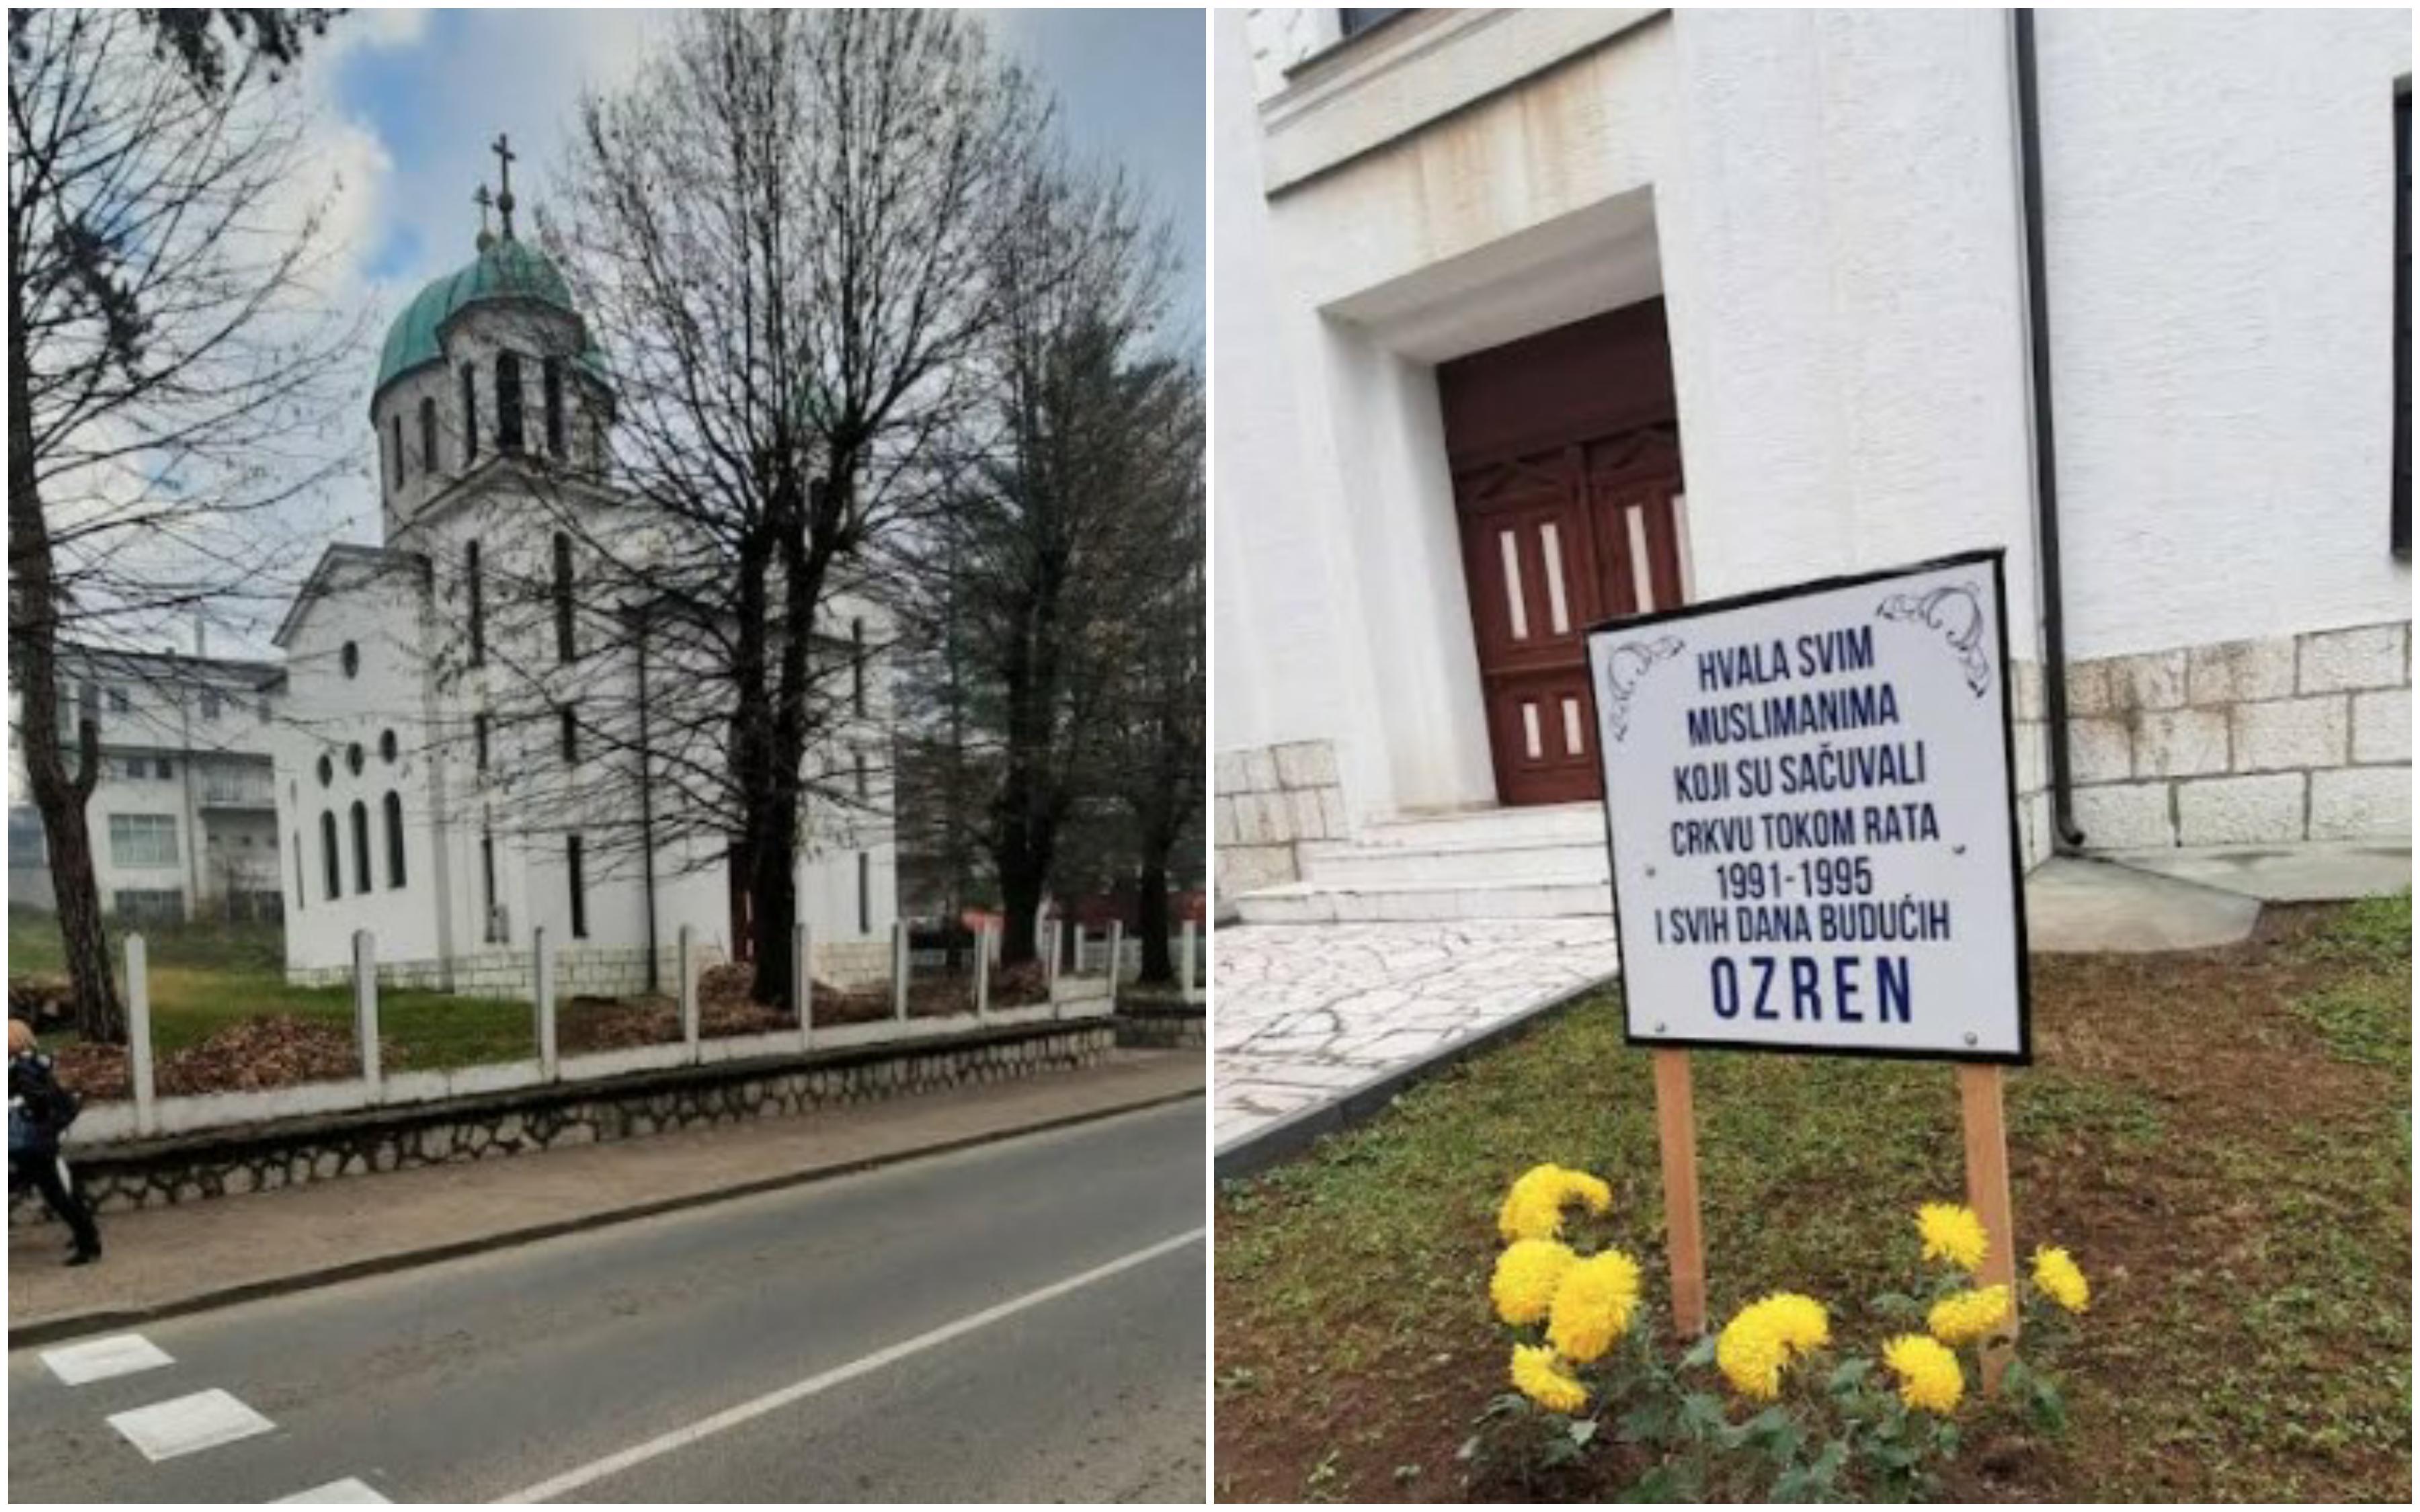 Ko je ispred pravoslavne crkve u Gračanici postavio tablu s natpisom "Hvala muslimanima koji su sačuvali crkvu tokom rata"?